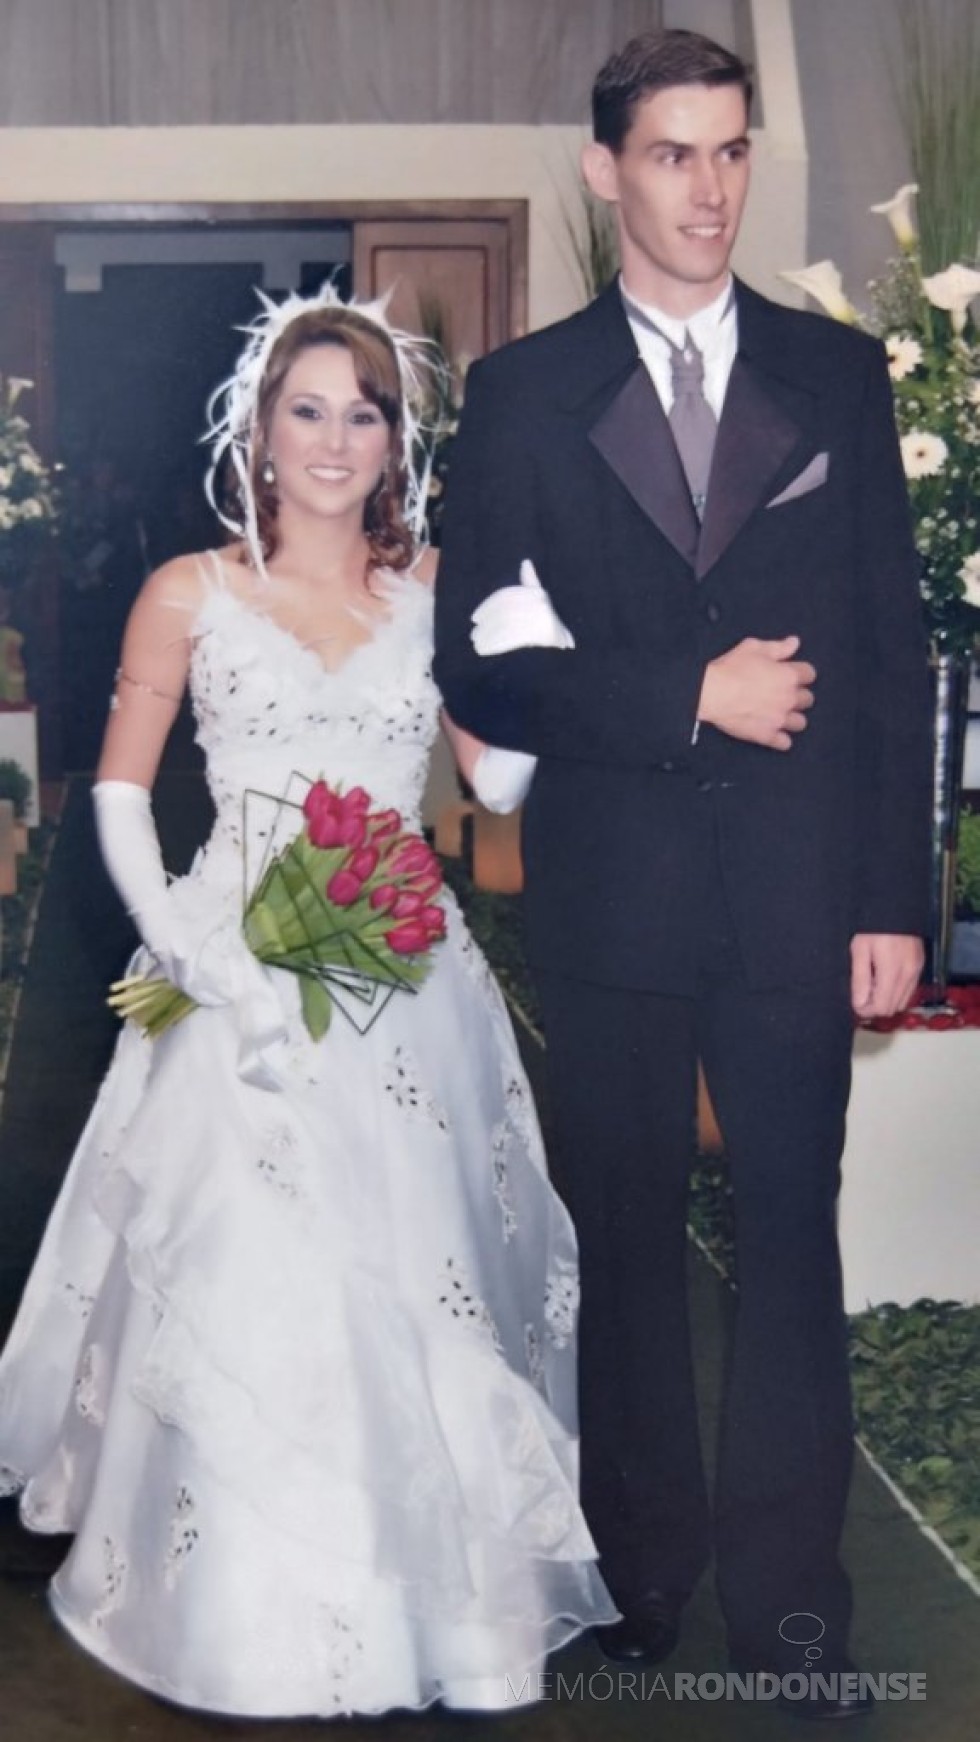 || Noivos Leila Sartori e Anderson Bento Maria que se casaram em começo de maio de 2008.
Imagem: Acervo pessoal - FOTO 18 - 